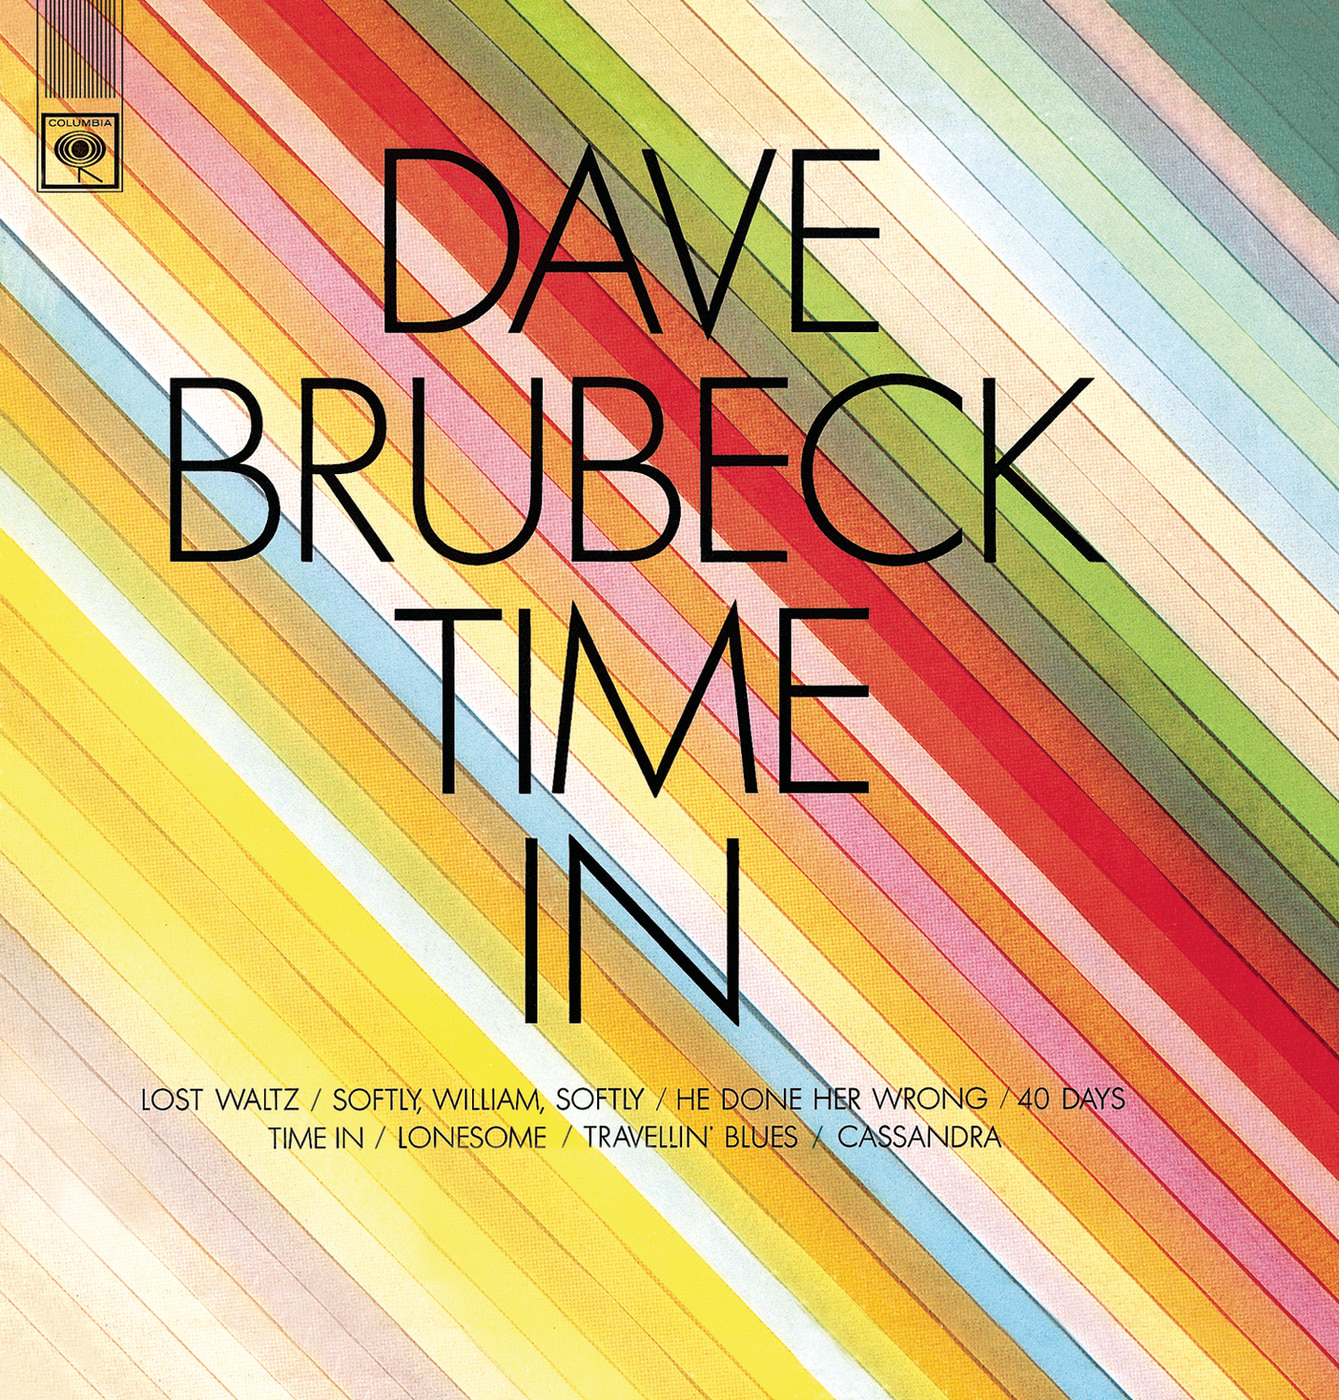 The Dave Brubeck Quartet-Iberia